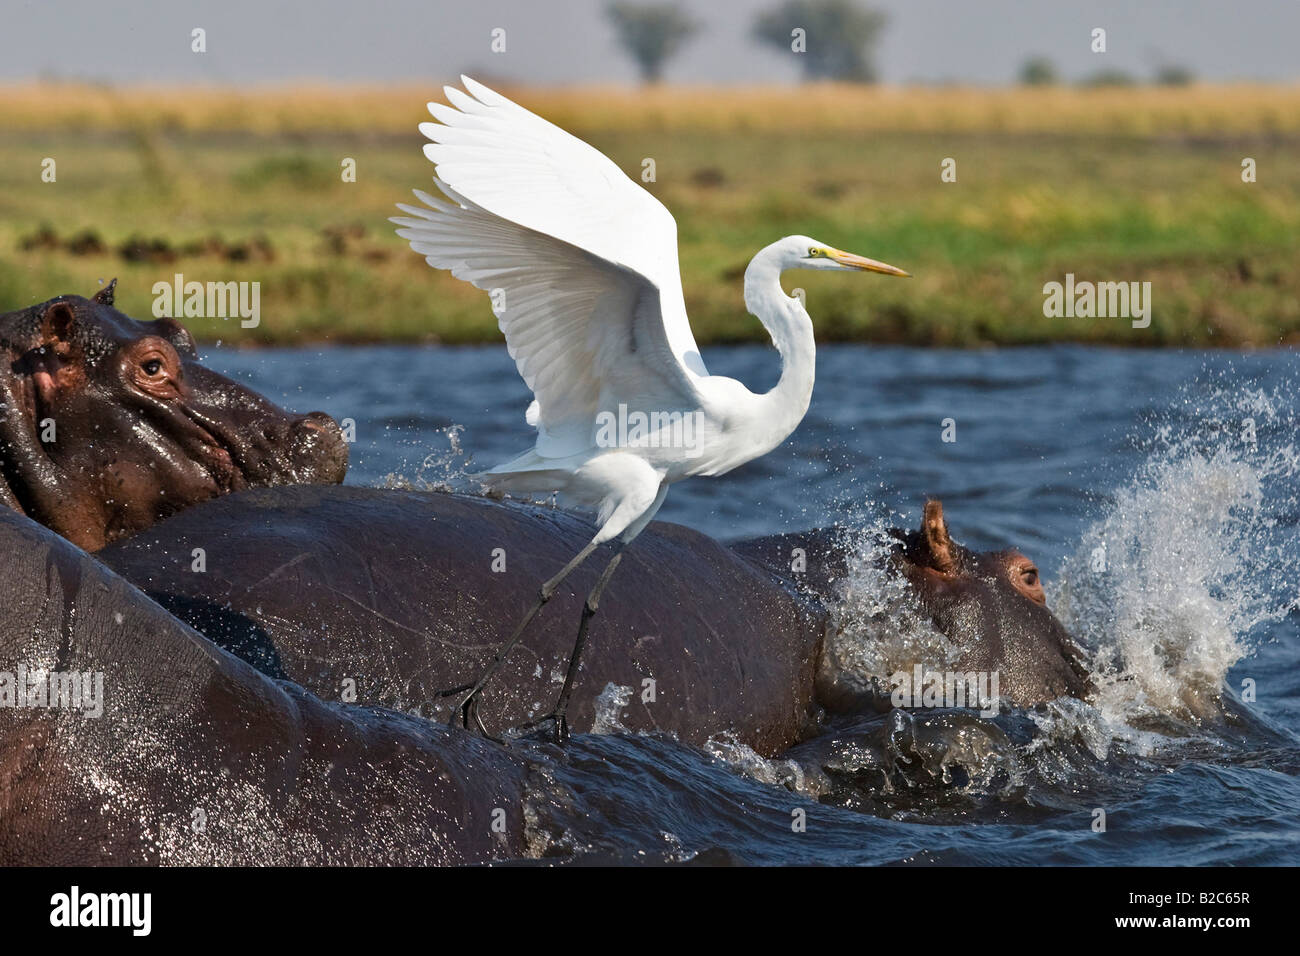 Hippopotami or Hippos (Hippopotamus amphibius) and a Great Egret, White Heron (Casmerodius albus), Chobe River Stock Photo